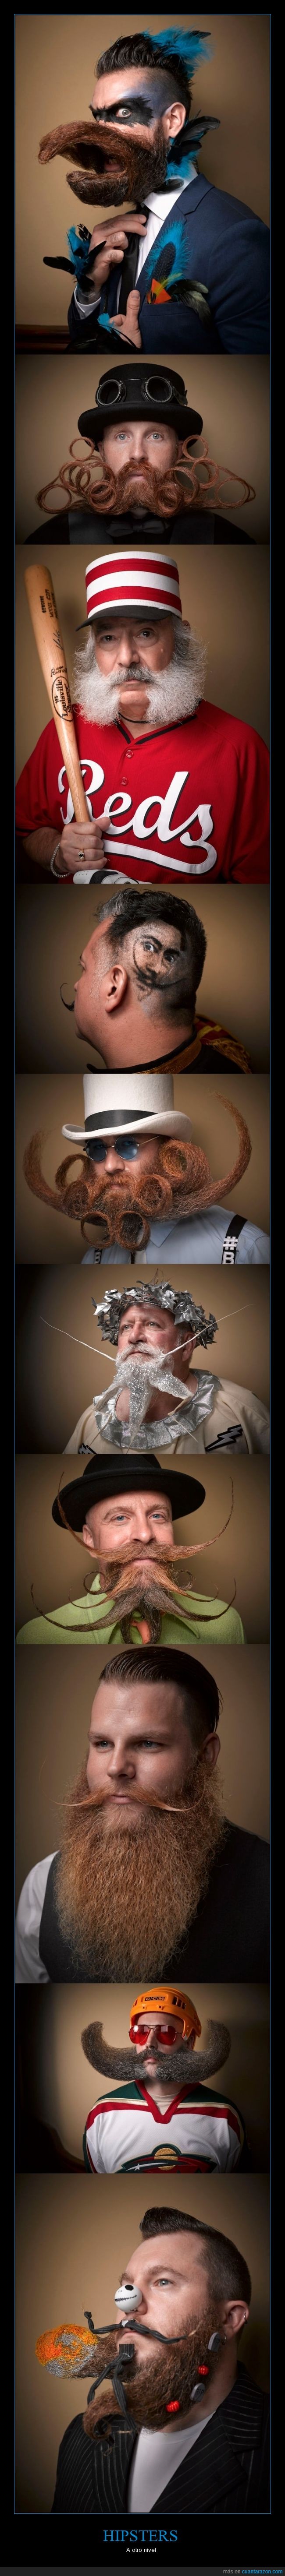 barba,bigote,concurso